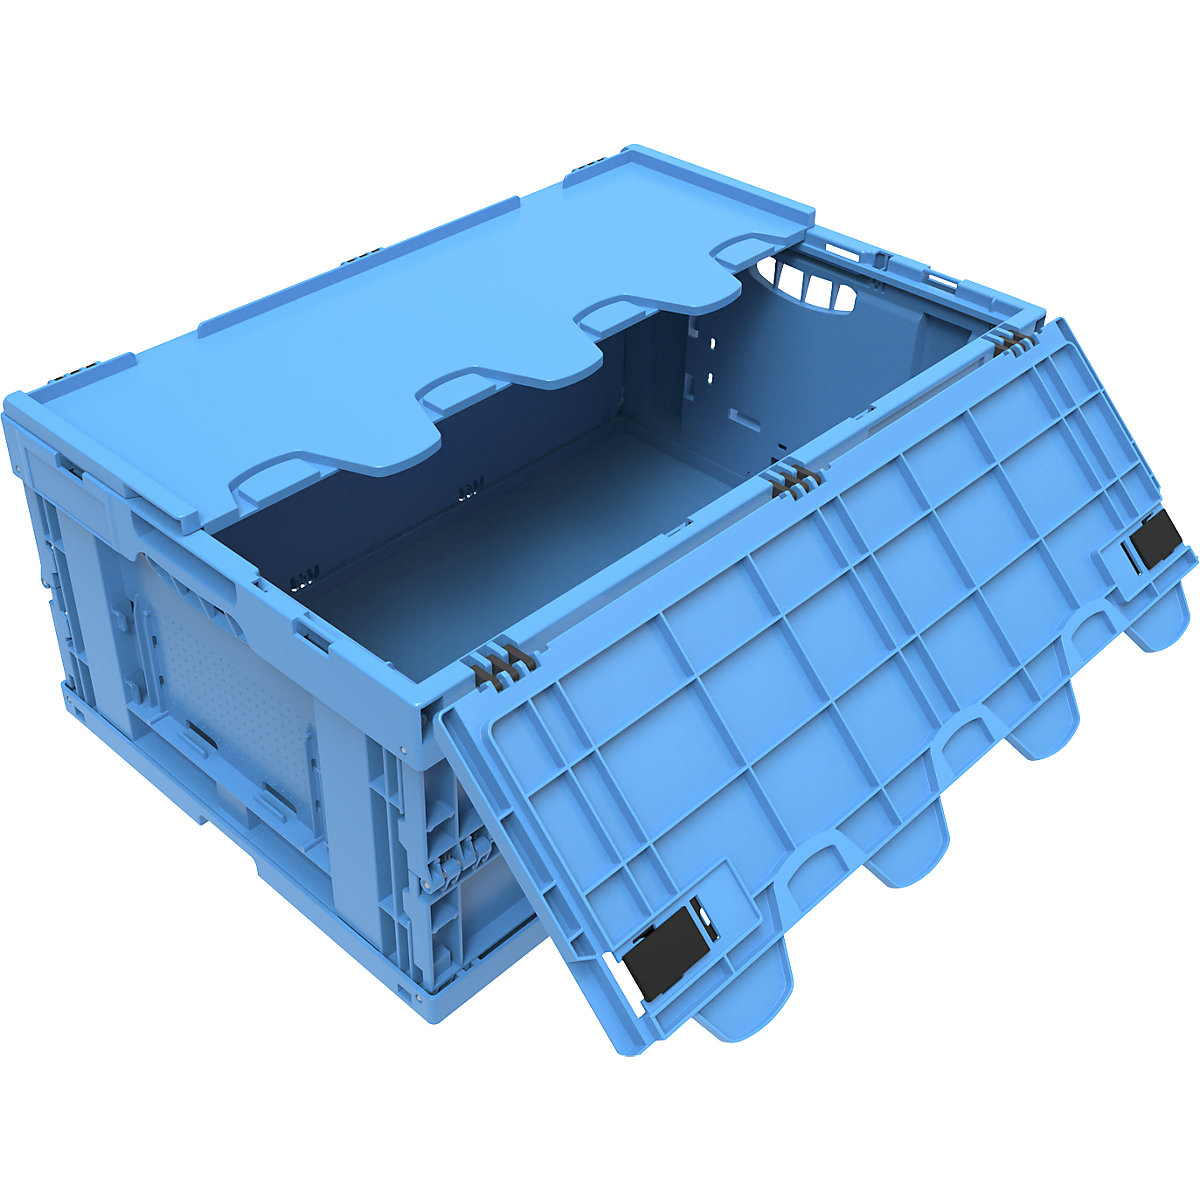 Vouwbox van polypropyleen, inhoud 49 l, met scharnierdeksel, blauw-6